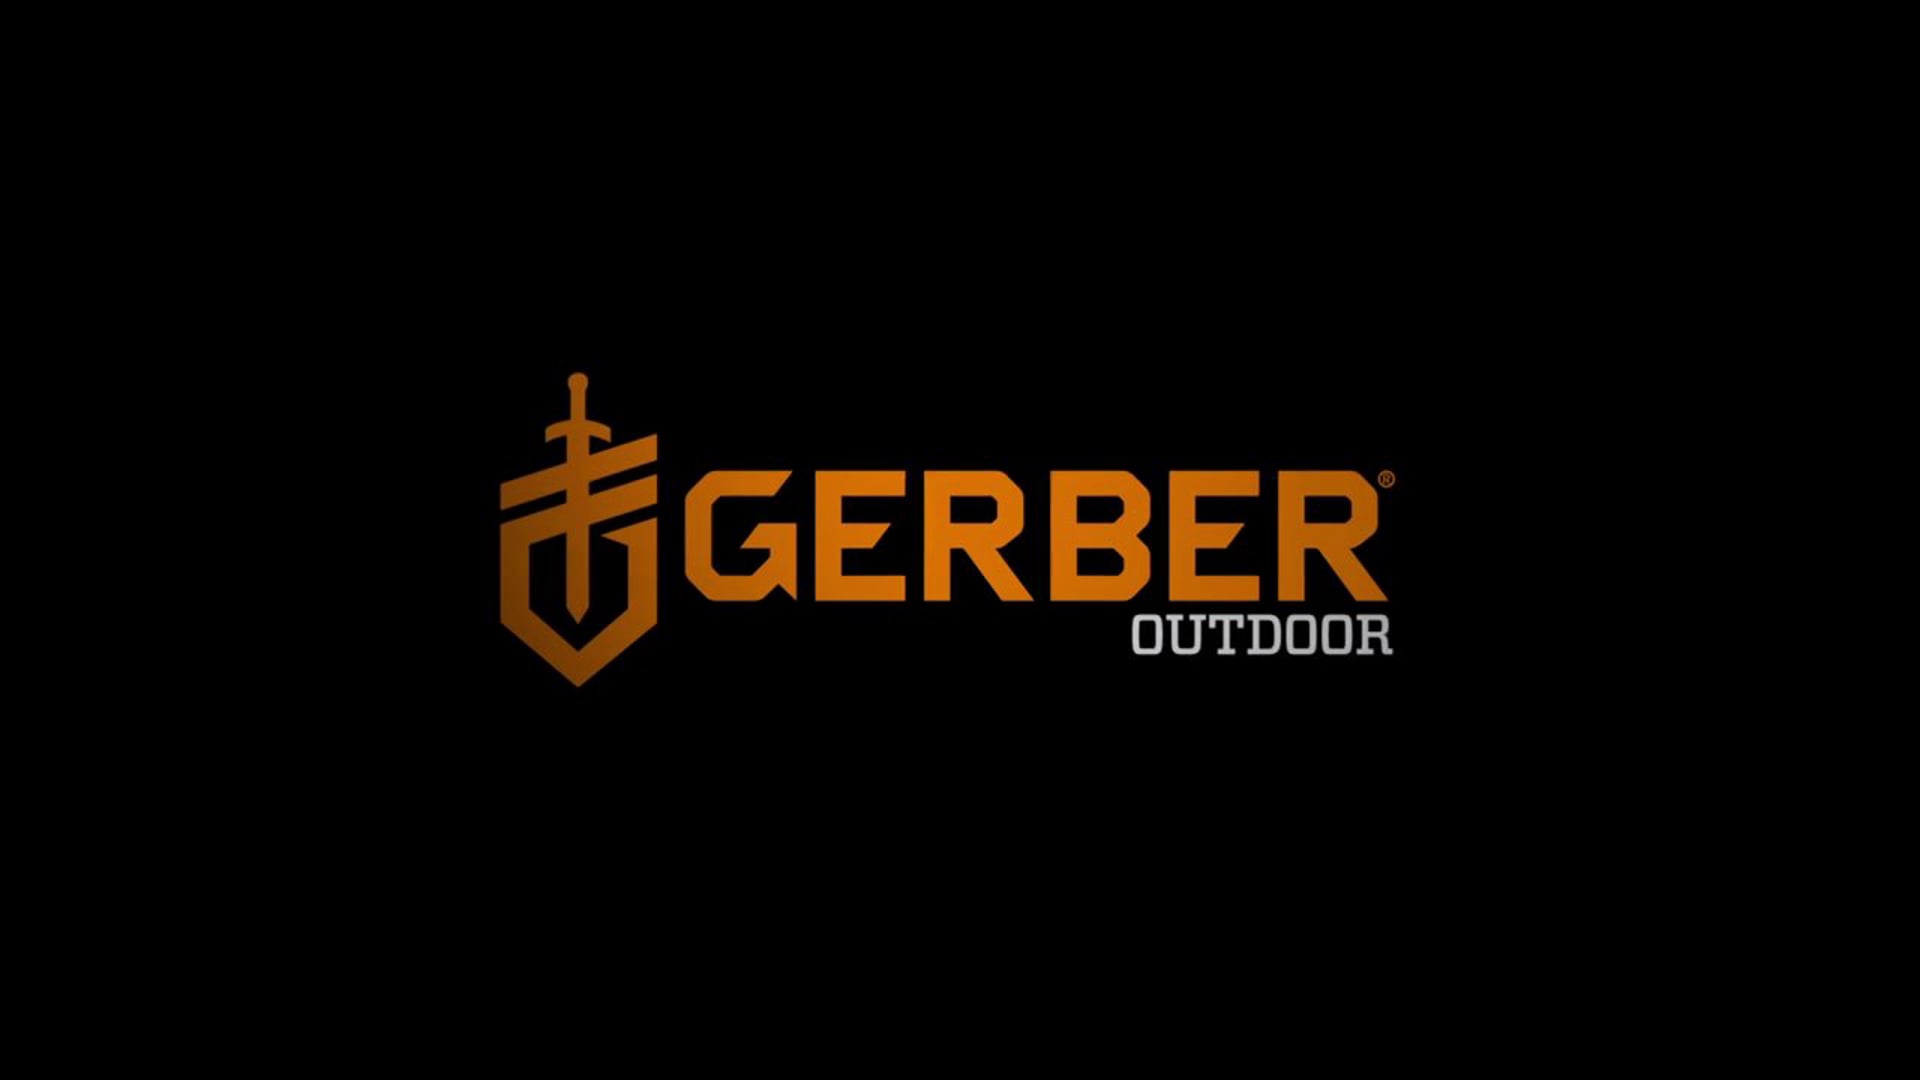 Gerber - THE STEADY Tool